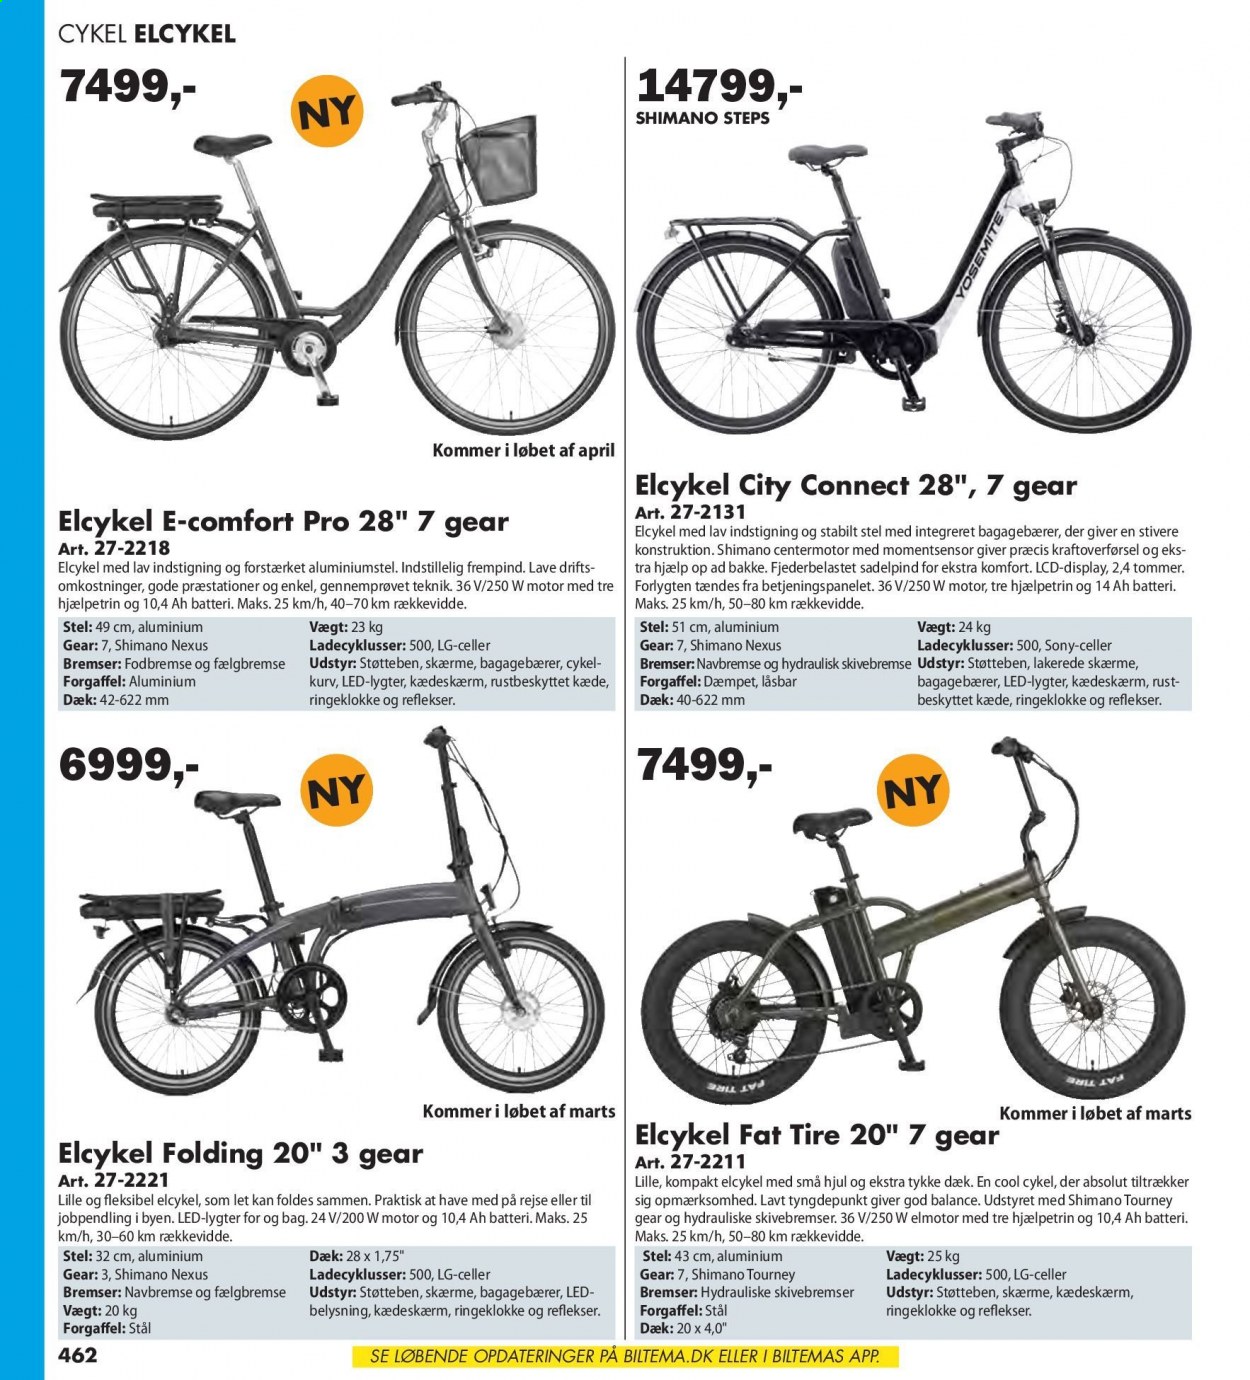 thumbnail - Biltema tilbud  - tilbudsprodukter - LG, Sony, elektrisk cykel, Shimano, cykel. Side 462.